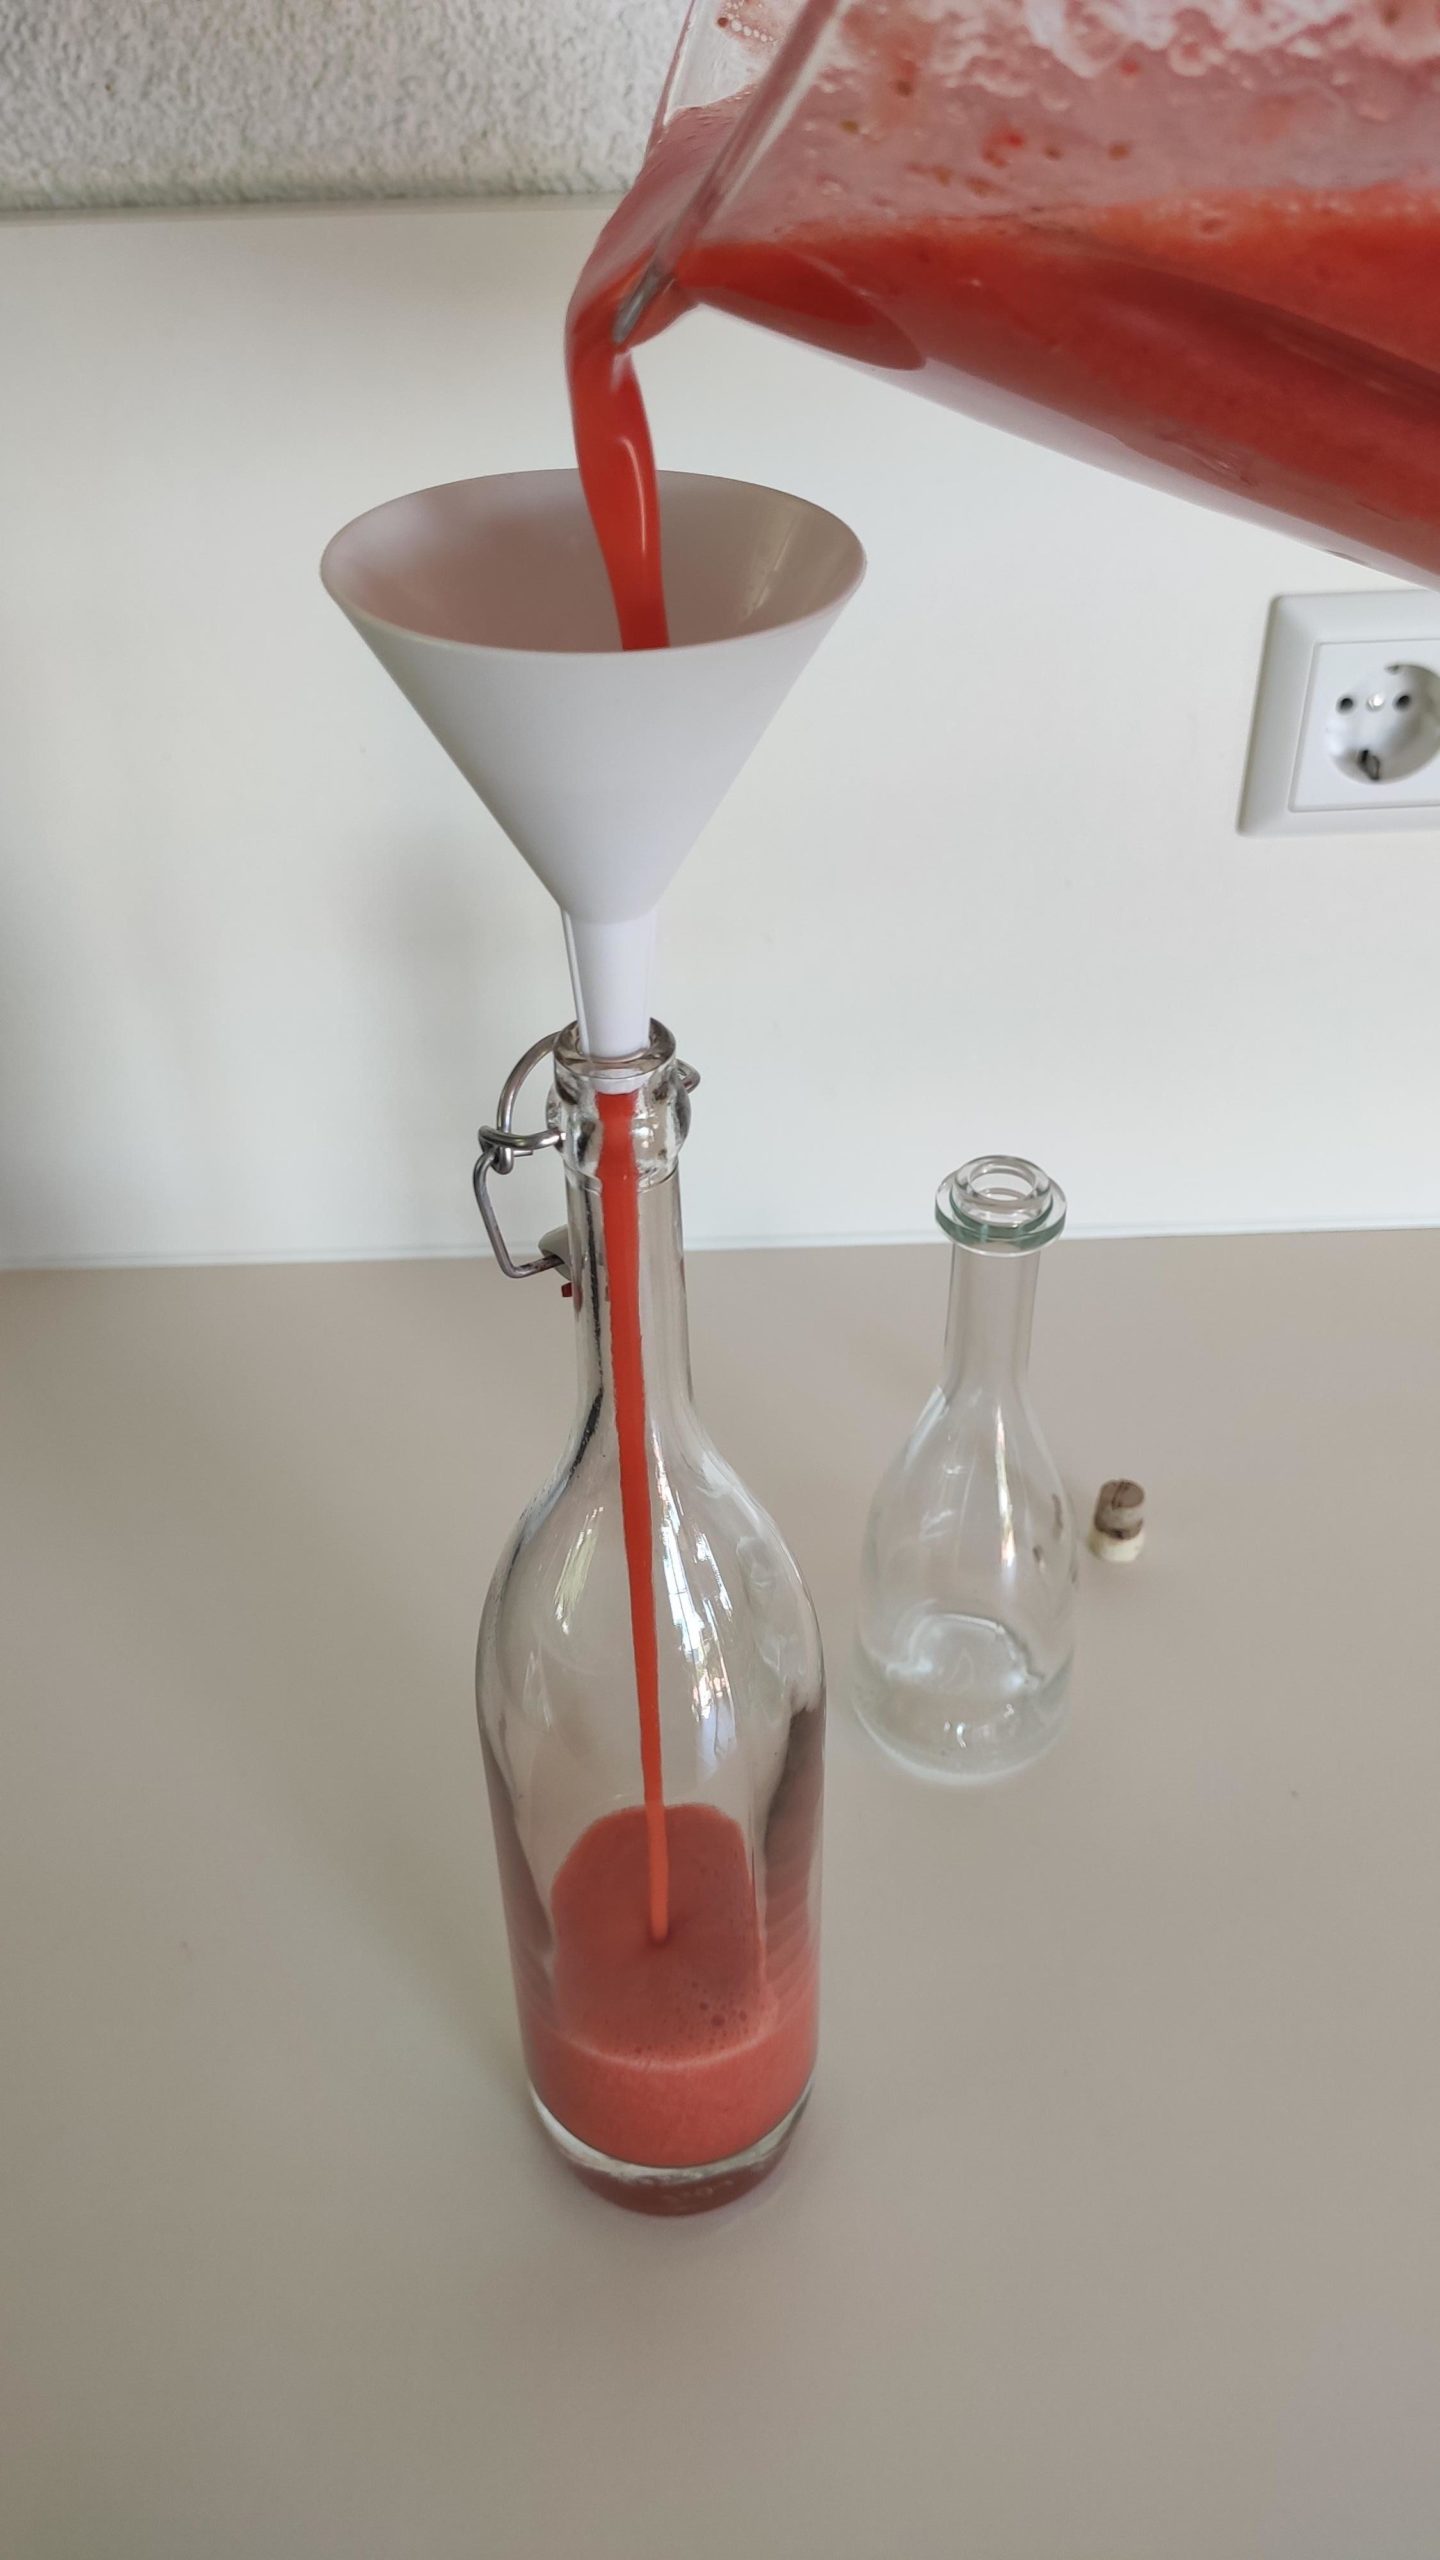 Bild zum Schritt 9 für die Kinder-Beschäftigung: 'Nun den Erdbeerlimes in ausgekochte Glasflaschen füllen. Dafür einen Trichter...'